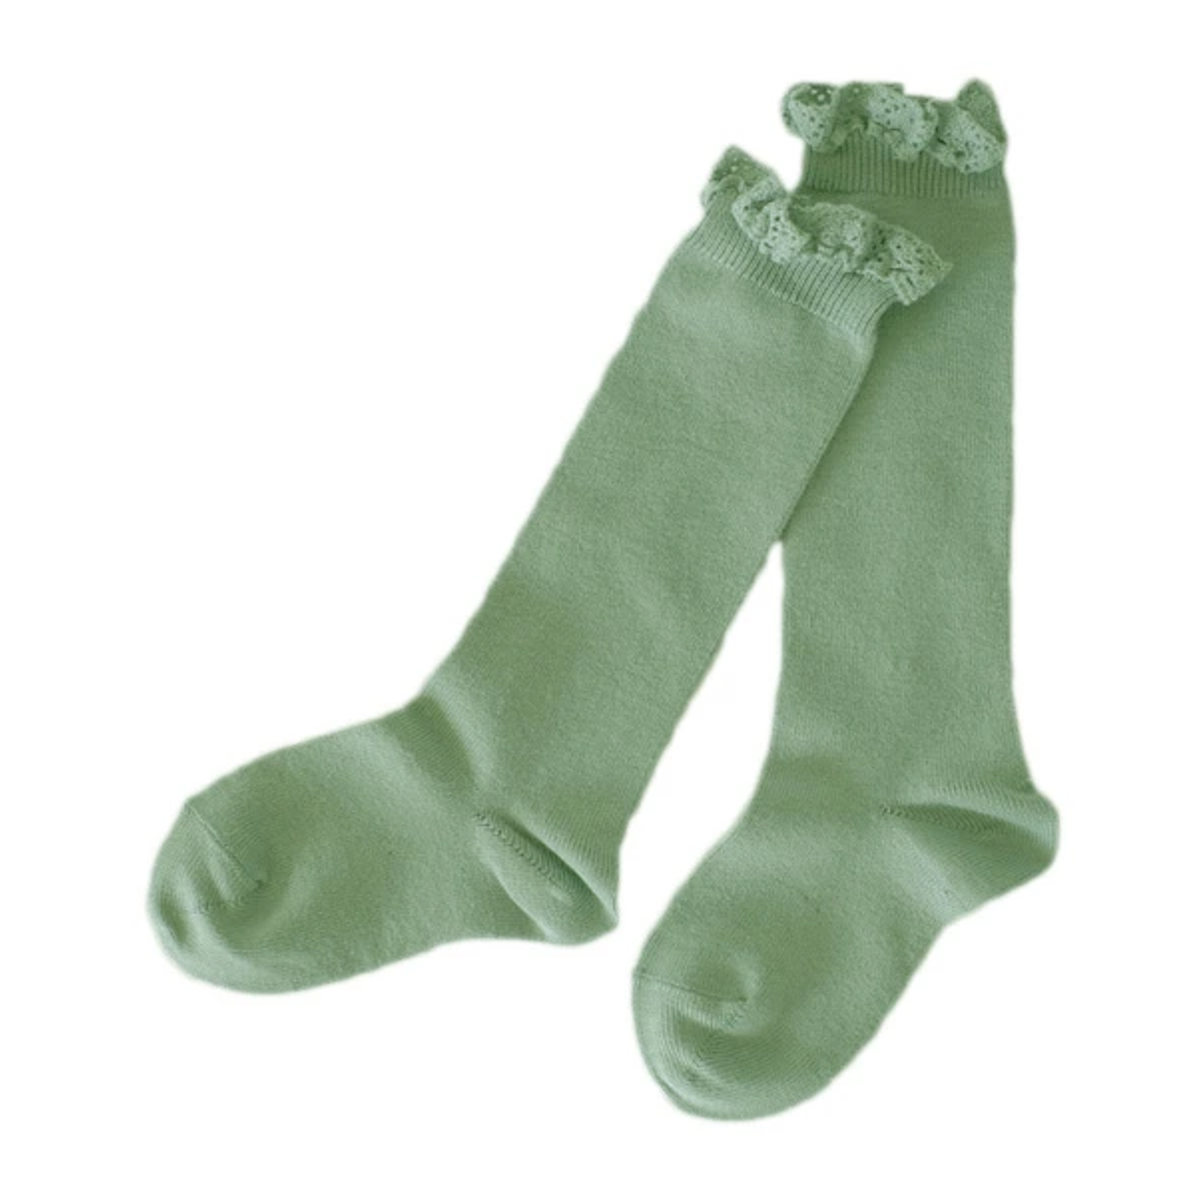 靴下 condor 子供用 5〜6歳 Knee socks with lace edging cuf...